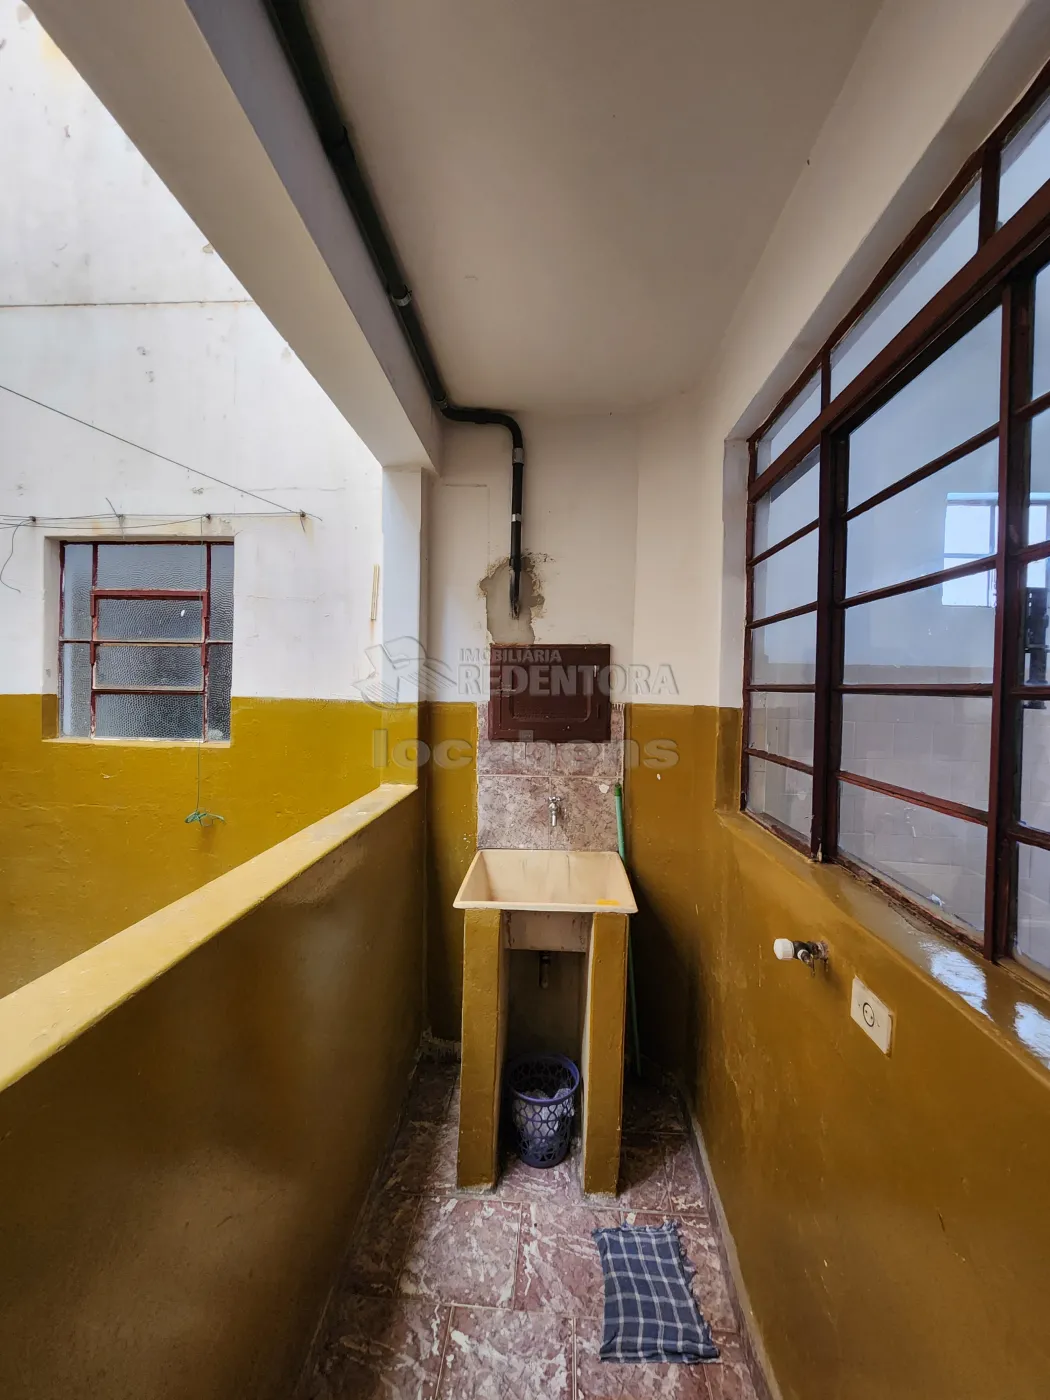 Alugar Apartamento / Padrão em São José do Rio Preto apenas R$ 700,00 - Foto 10